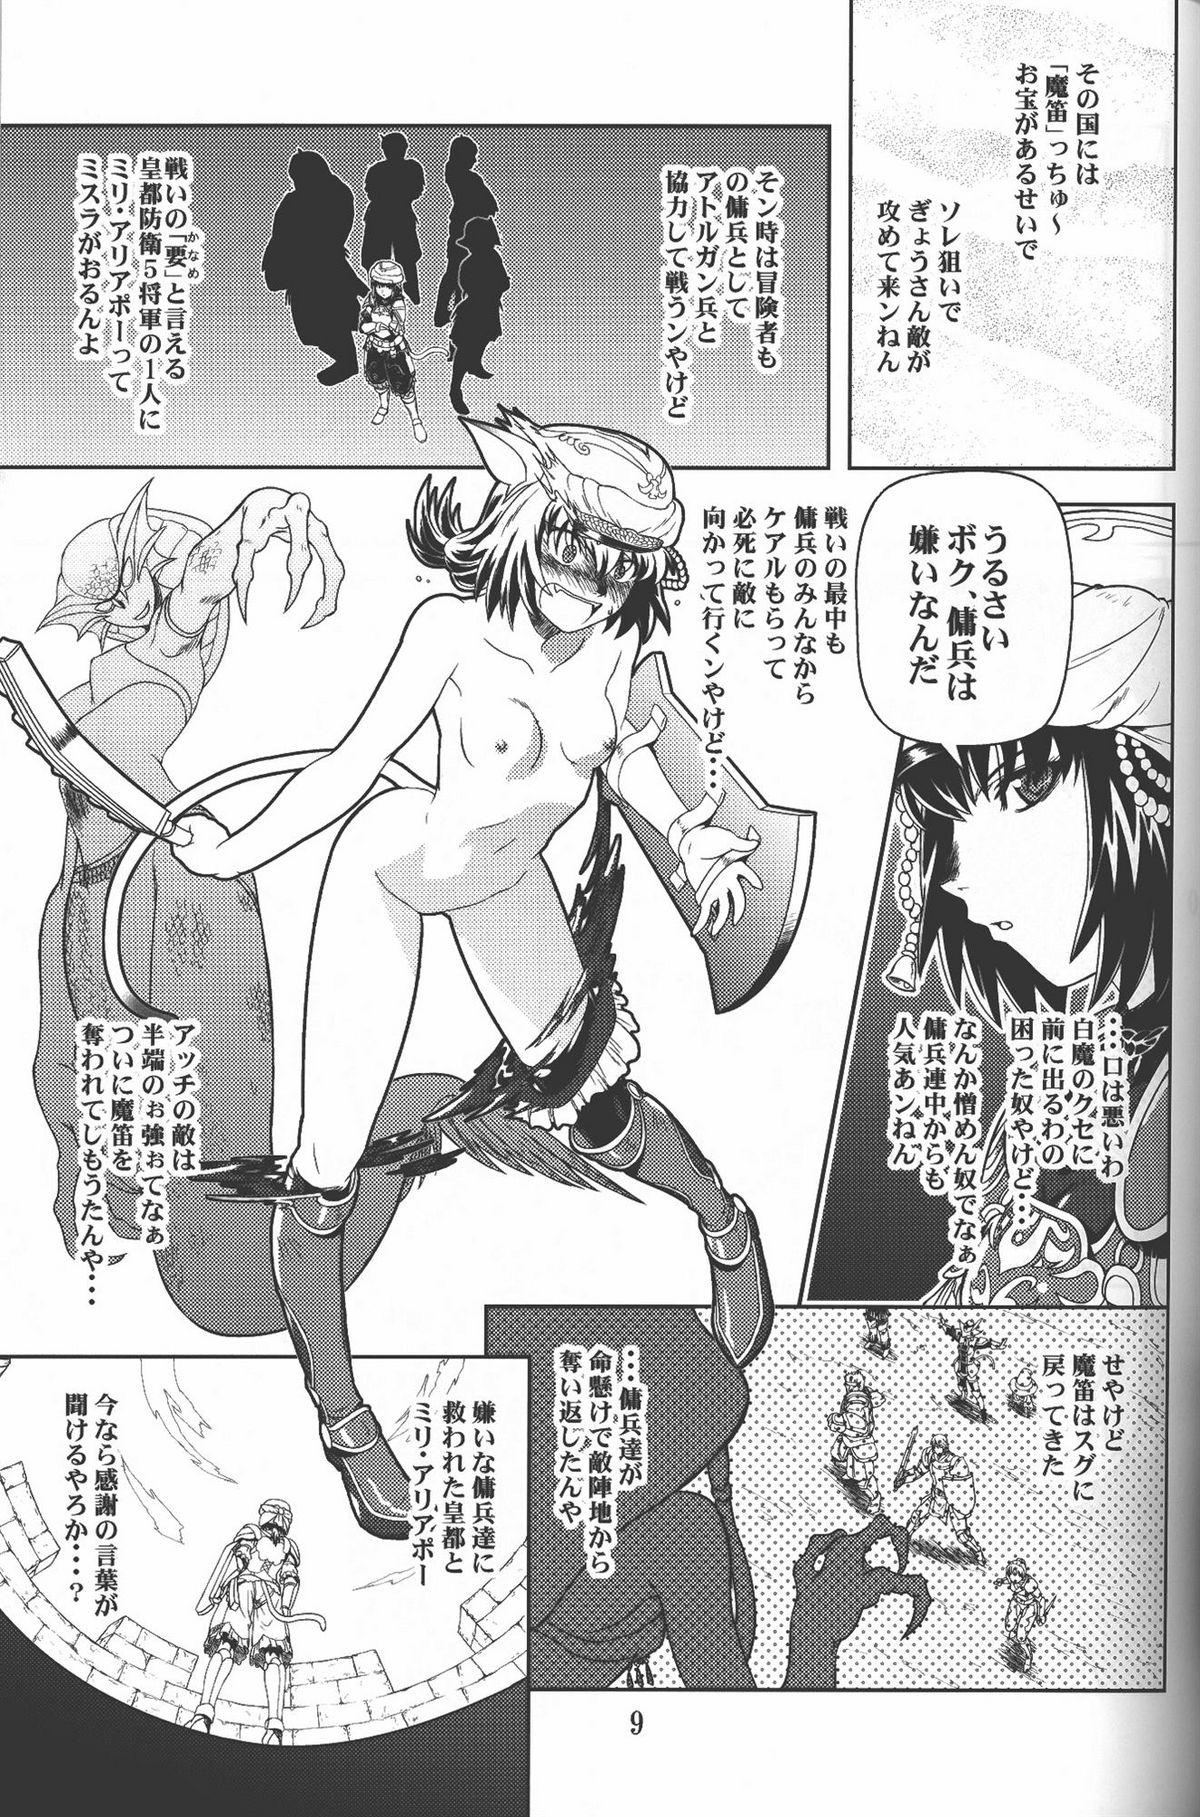 Nurumassage Zoku Mithran Tarutaru - Final fantasy xi Buttplug - Page 8